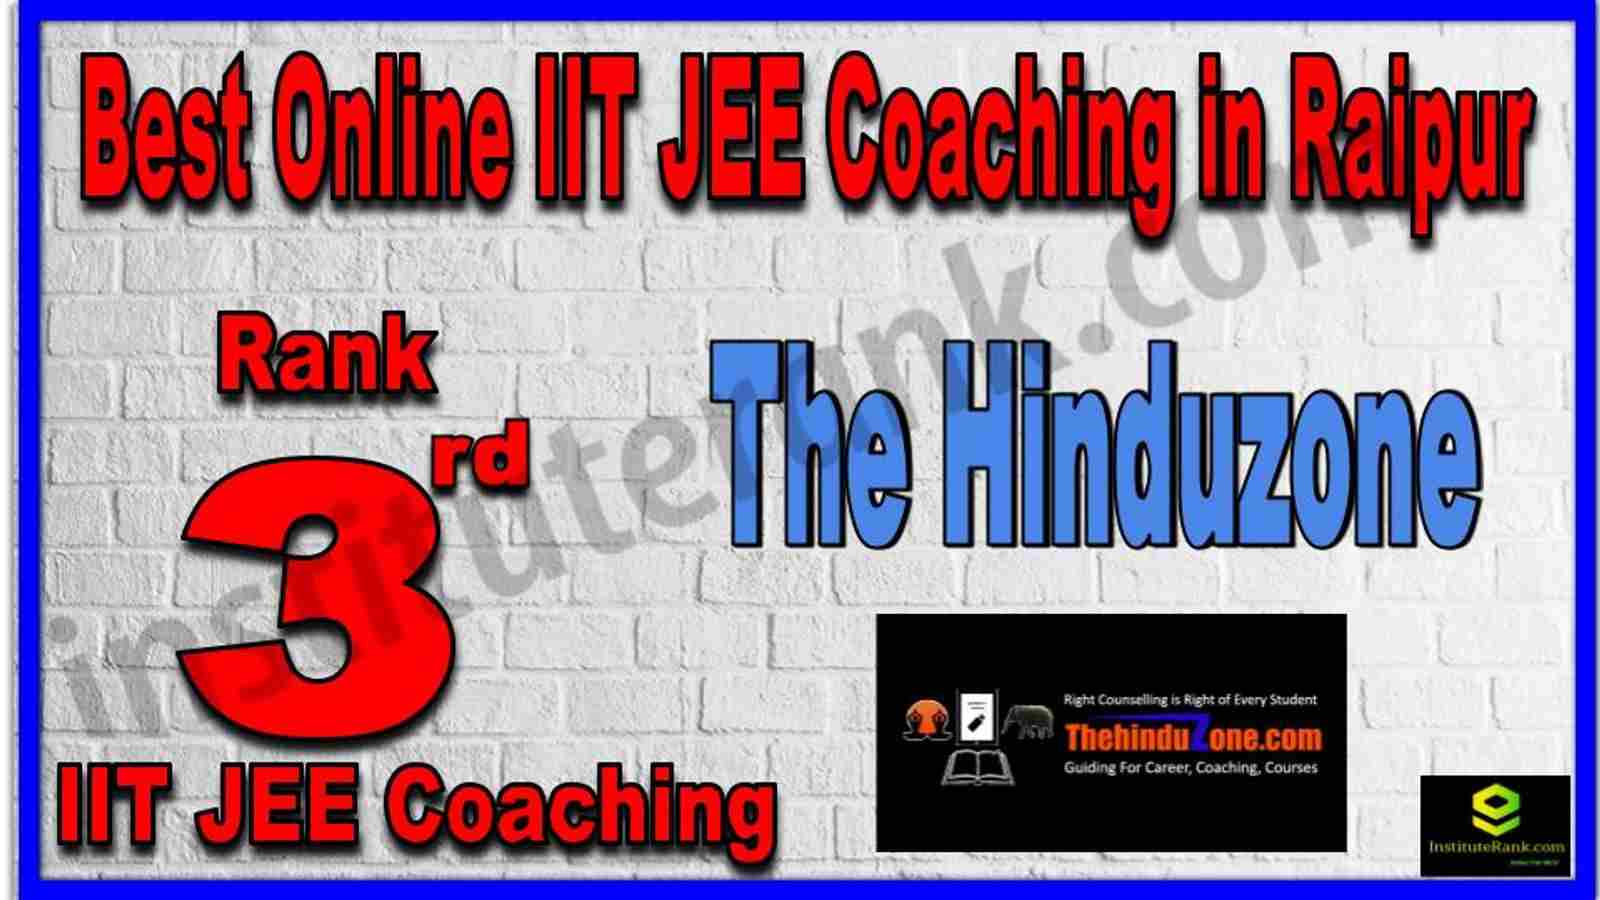 Rank 3rd Best Online IIT JEE Coaching in Raipur